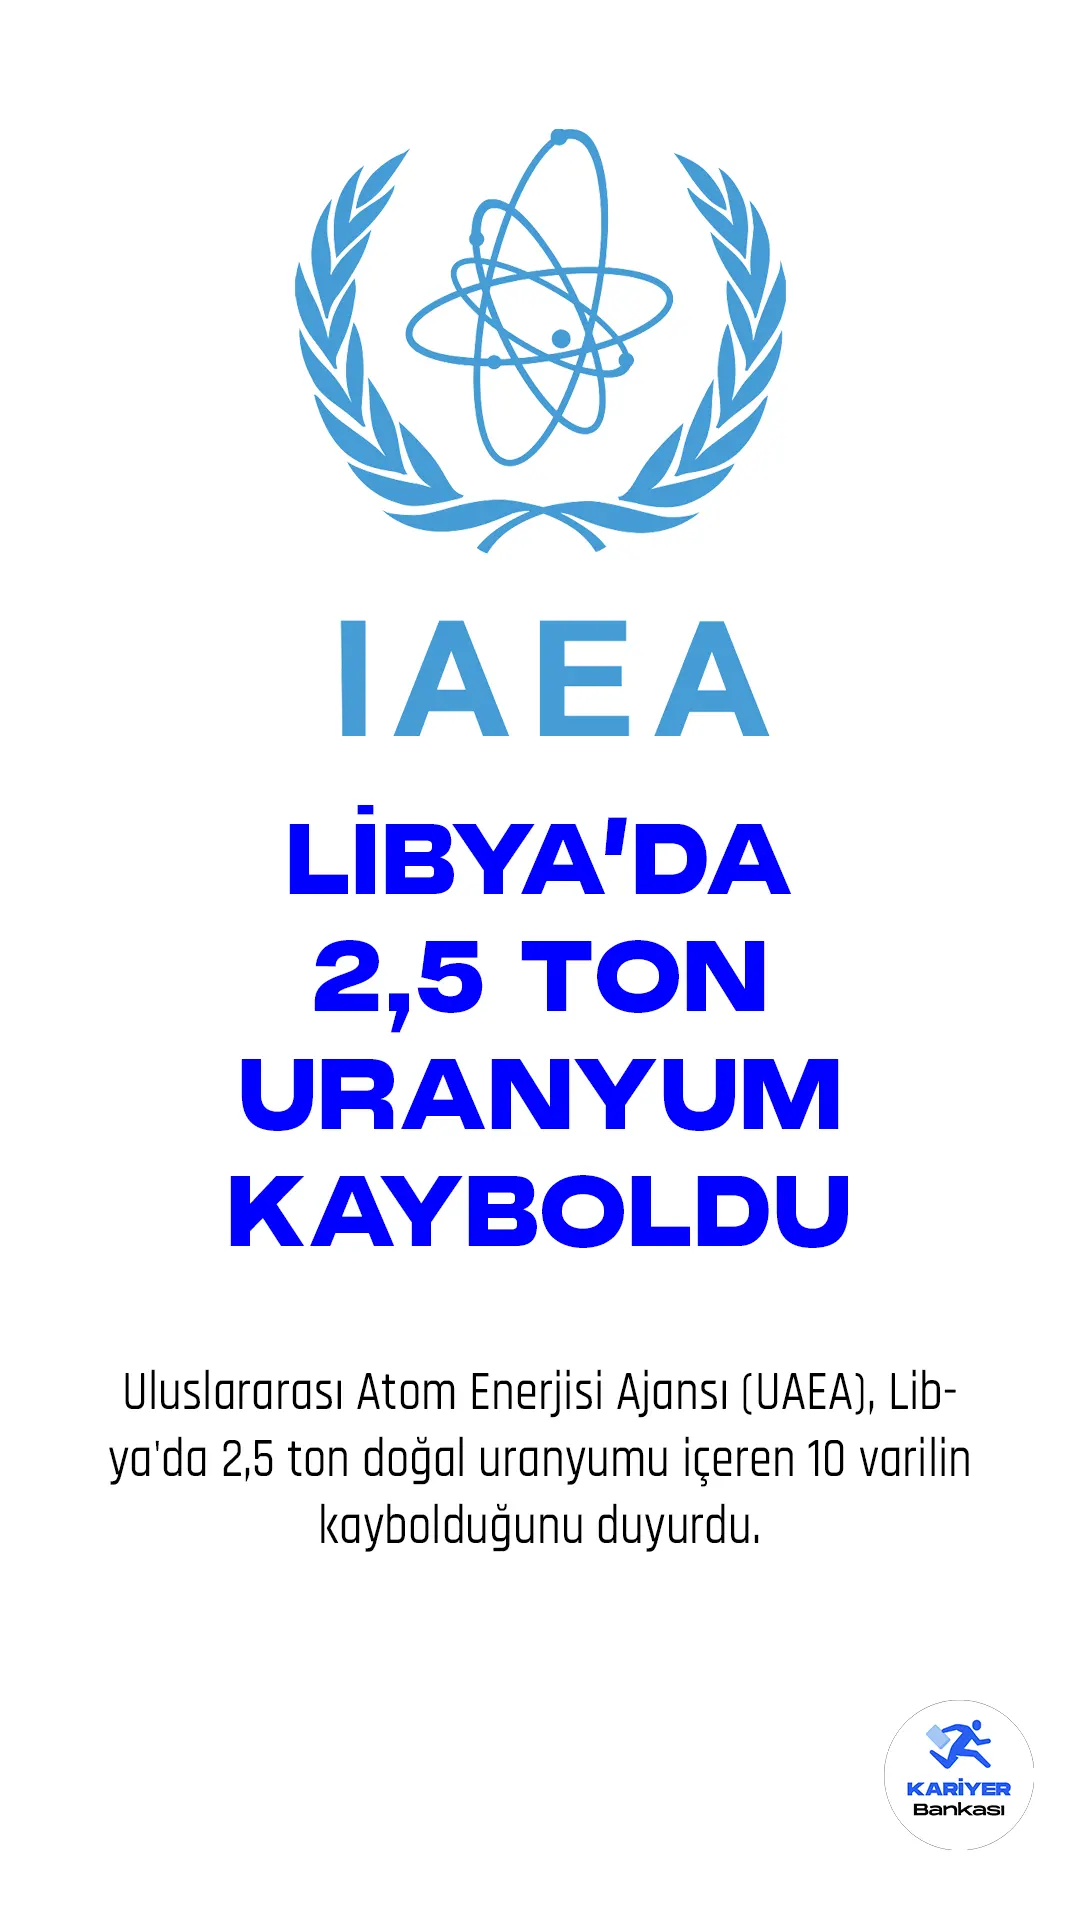 Uluslararası Atom Enerjisi Ajansı (UAEA), Libya'da 2,5 ton doğal uranyumu içeren 10 varilin kaybolduğunu duyurdu.